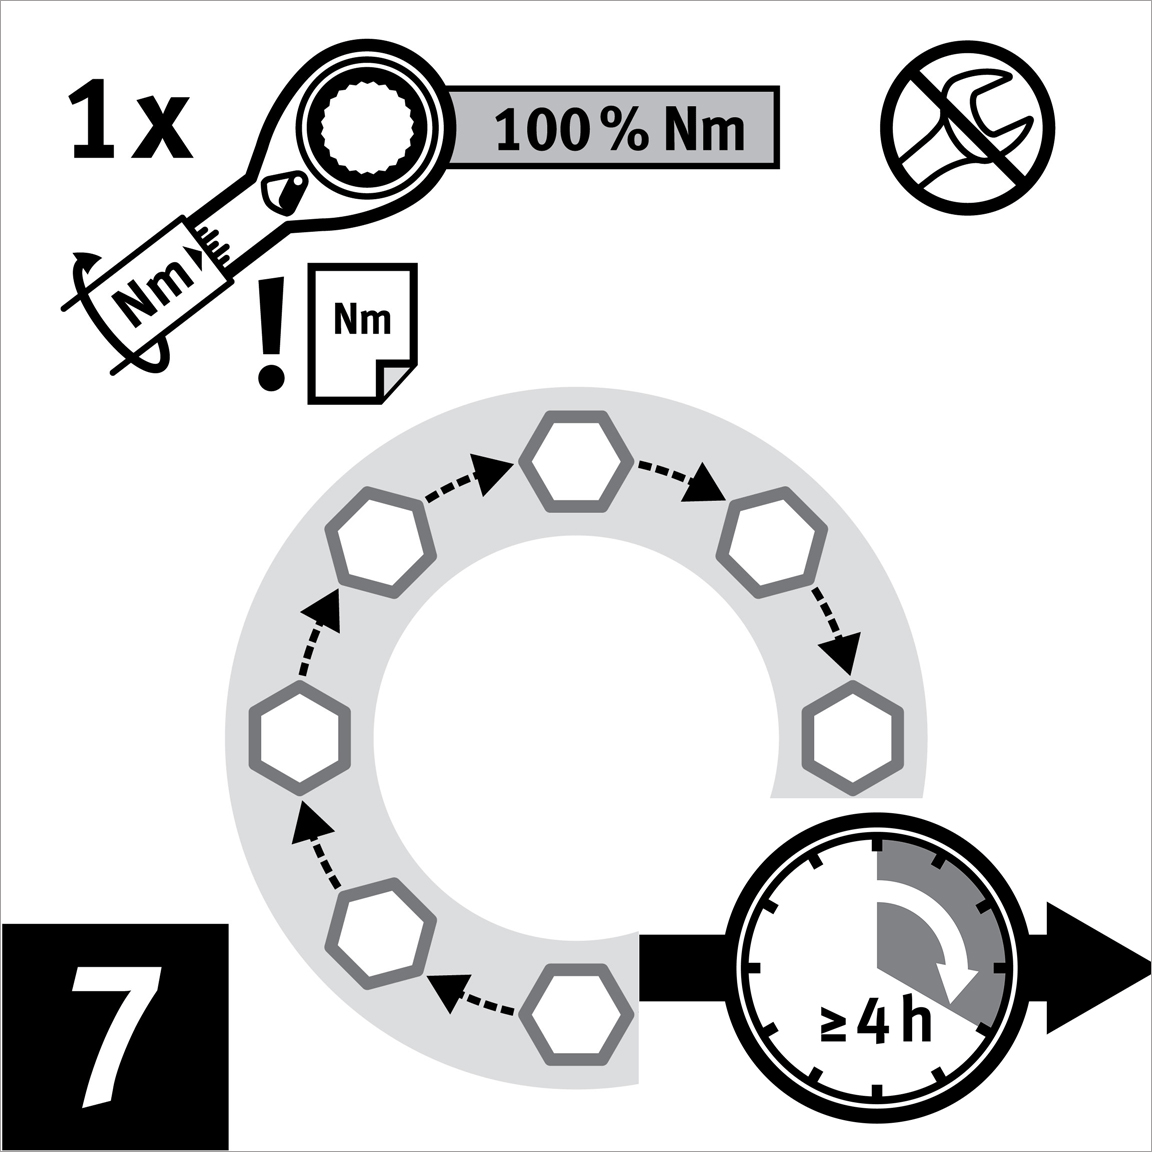 Applicare la coppia di serraggio raggiungendo il 100% del valore target con passaggio circolare.